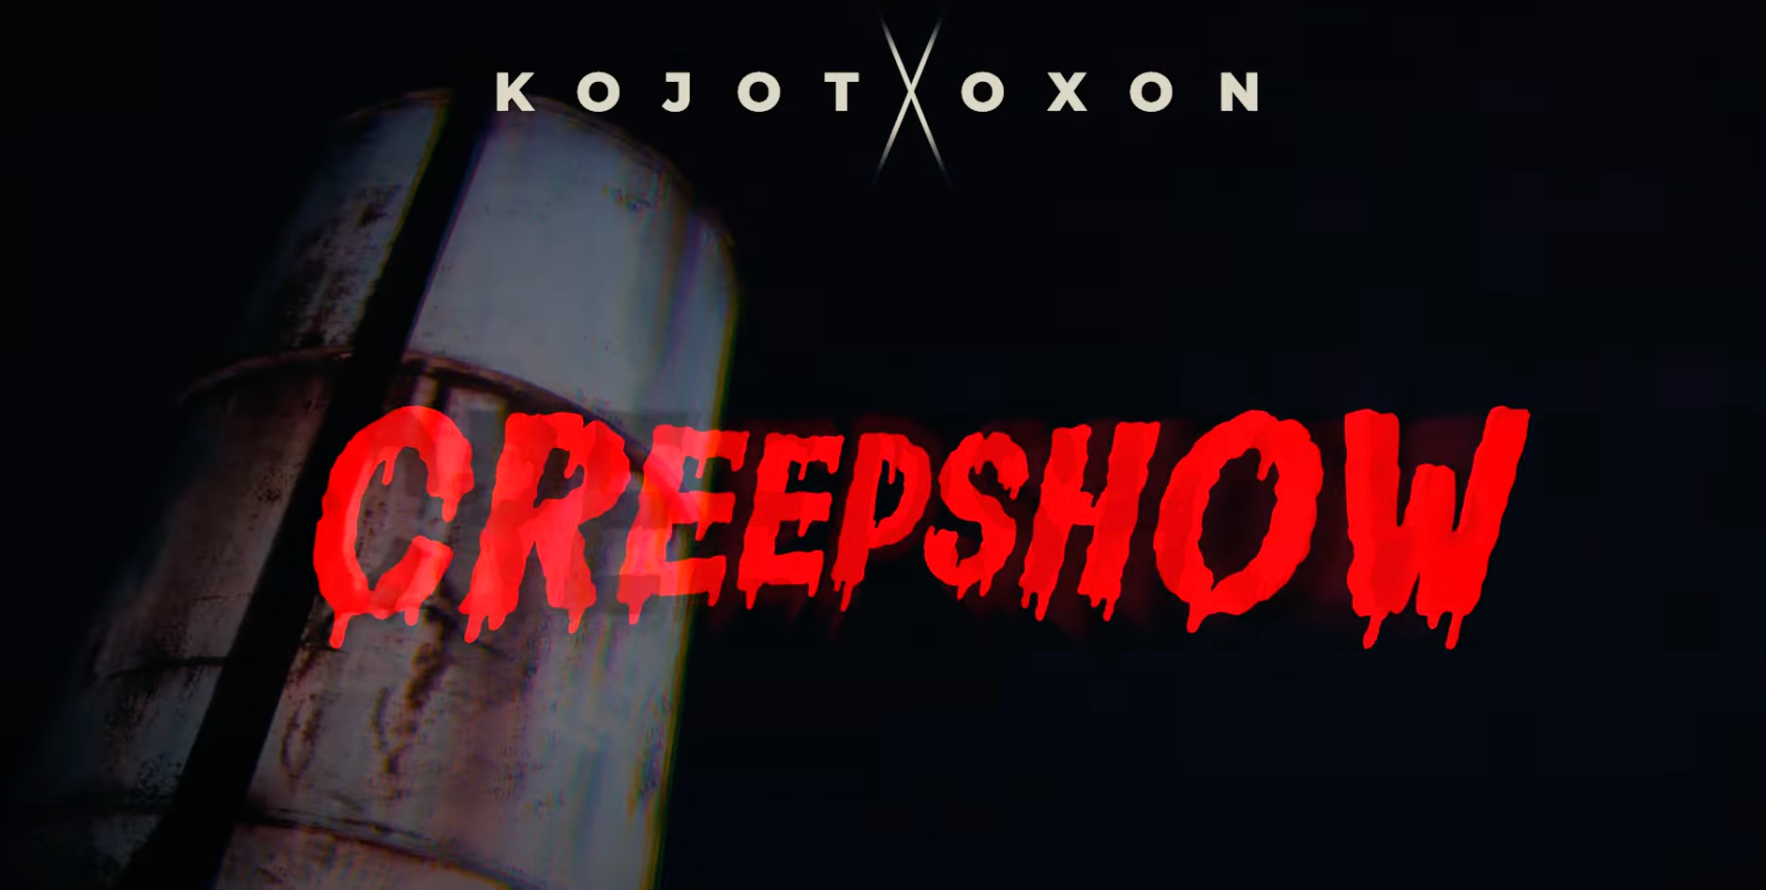 Creepshow || Kojot i Oxon z nowym singlem!